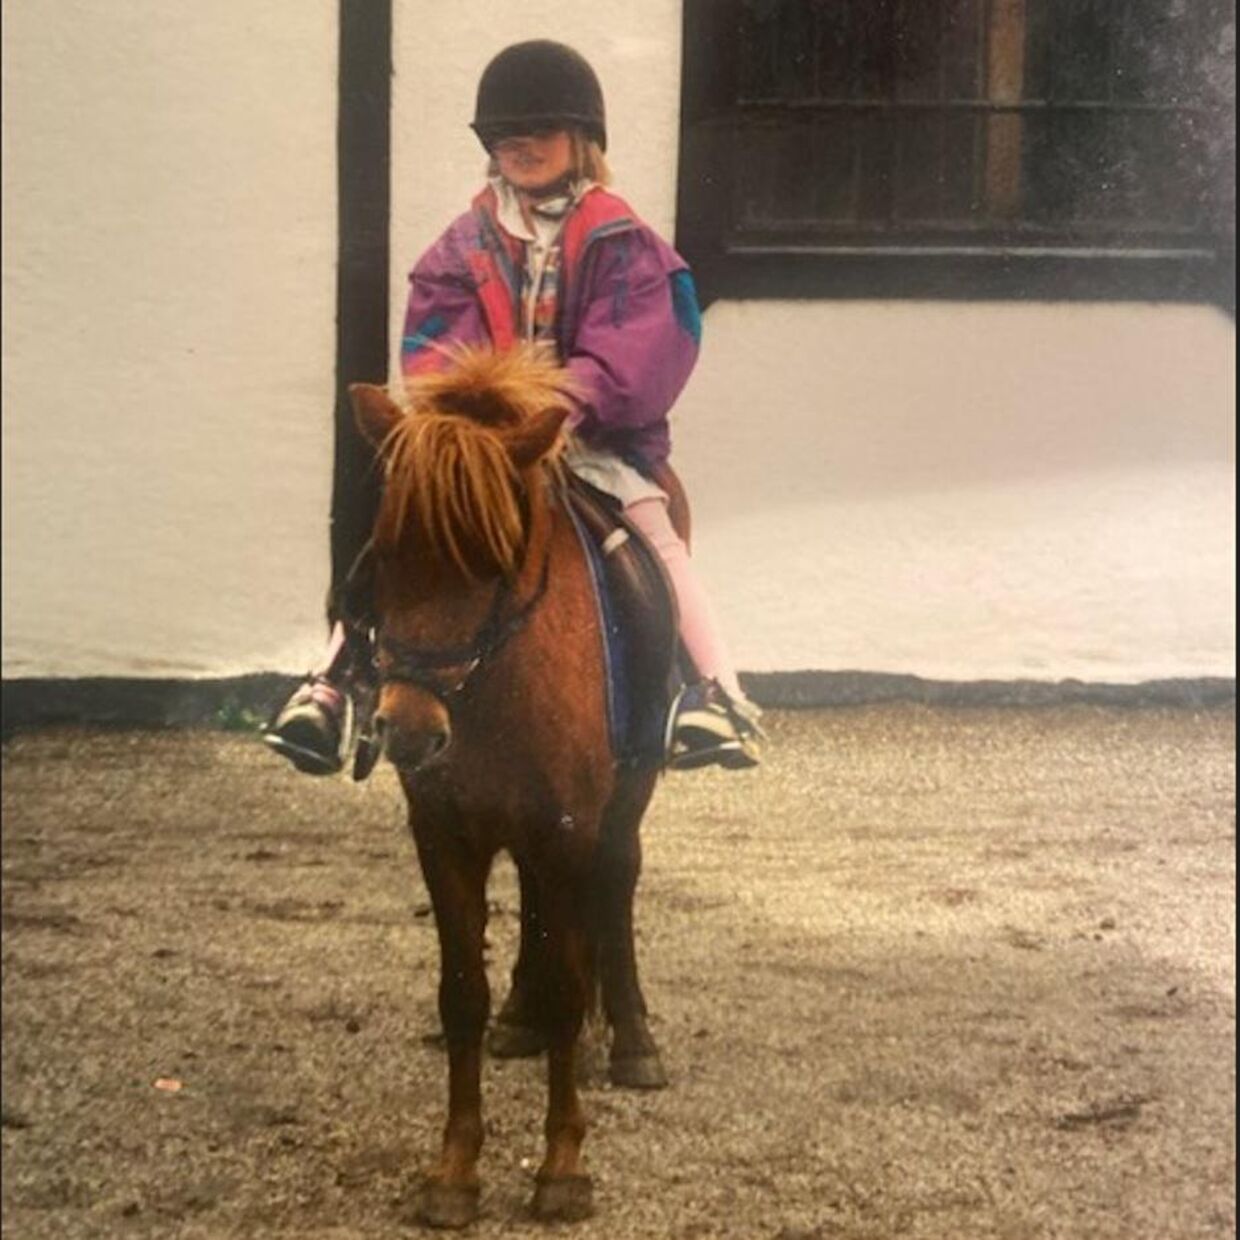 Sophie Jahn fik et helt særligt forhold til hestene, der lyttede, når hun havde brug for at komme ud med sine følelser. Når hun talte til dem, blev hun ikke bebrejdet eller sagt imod. Foto: Privat.